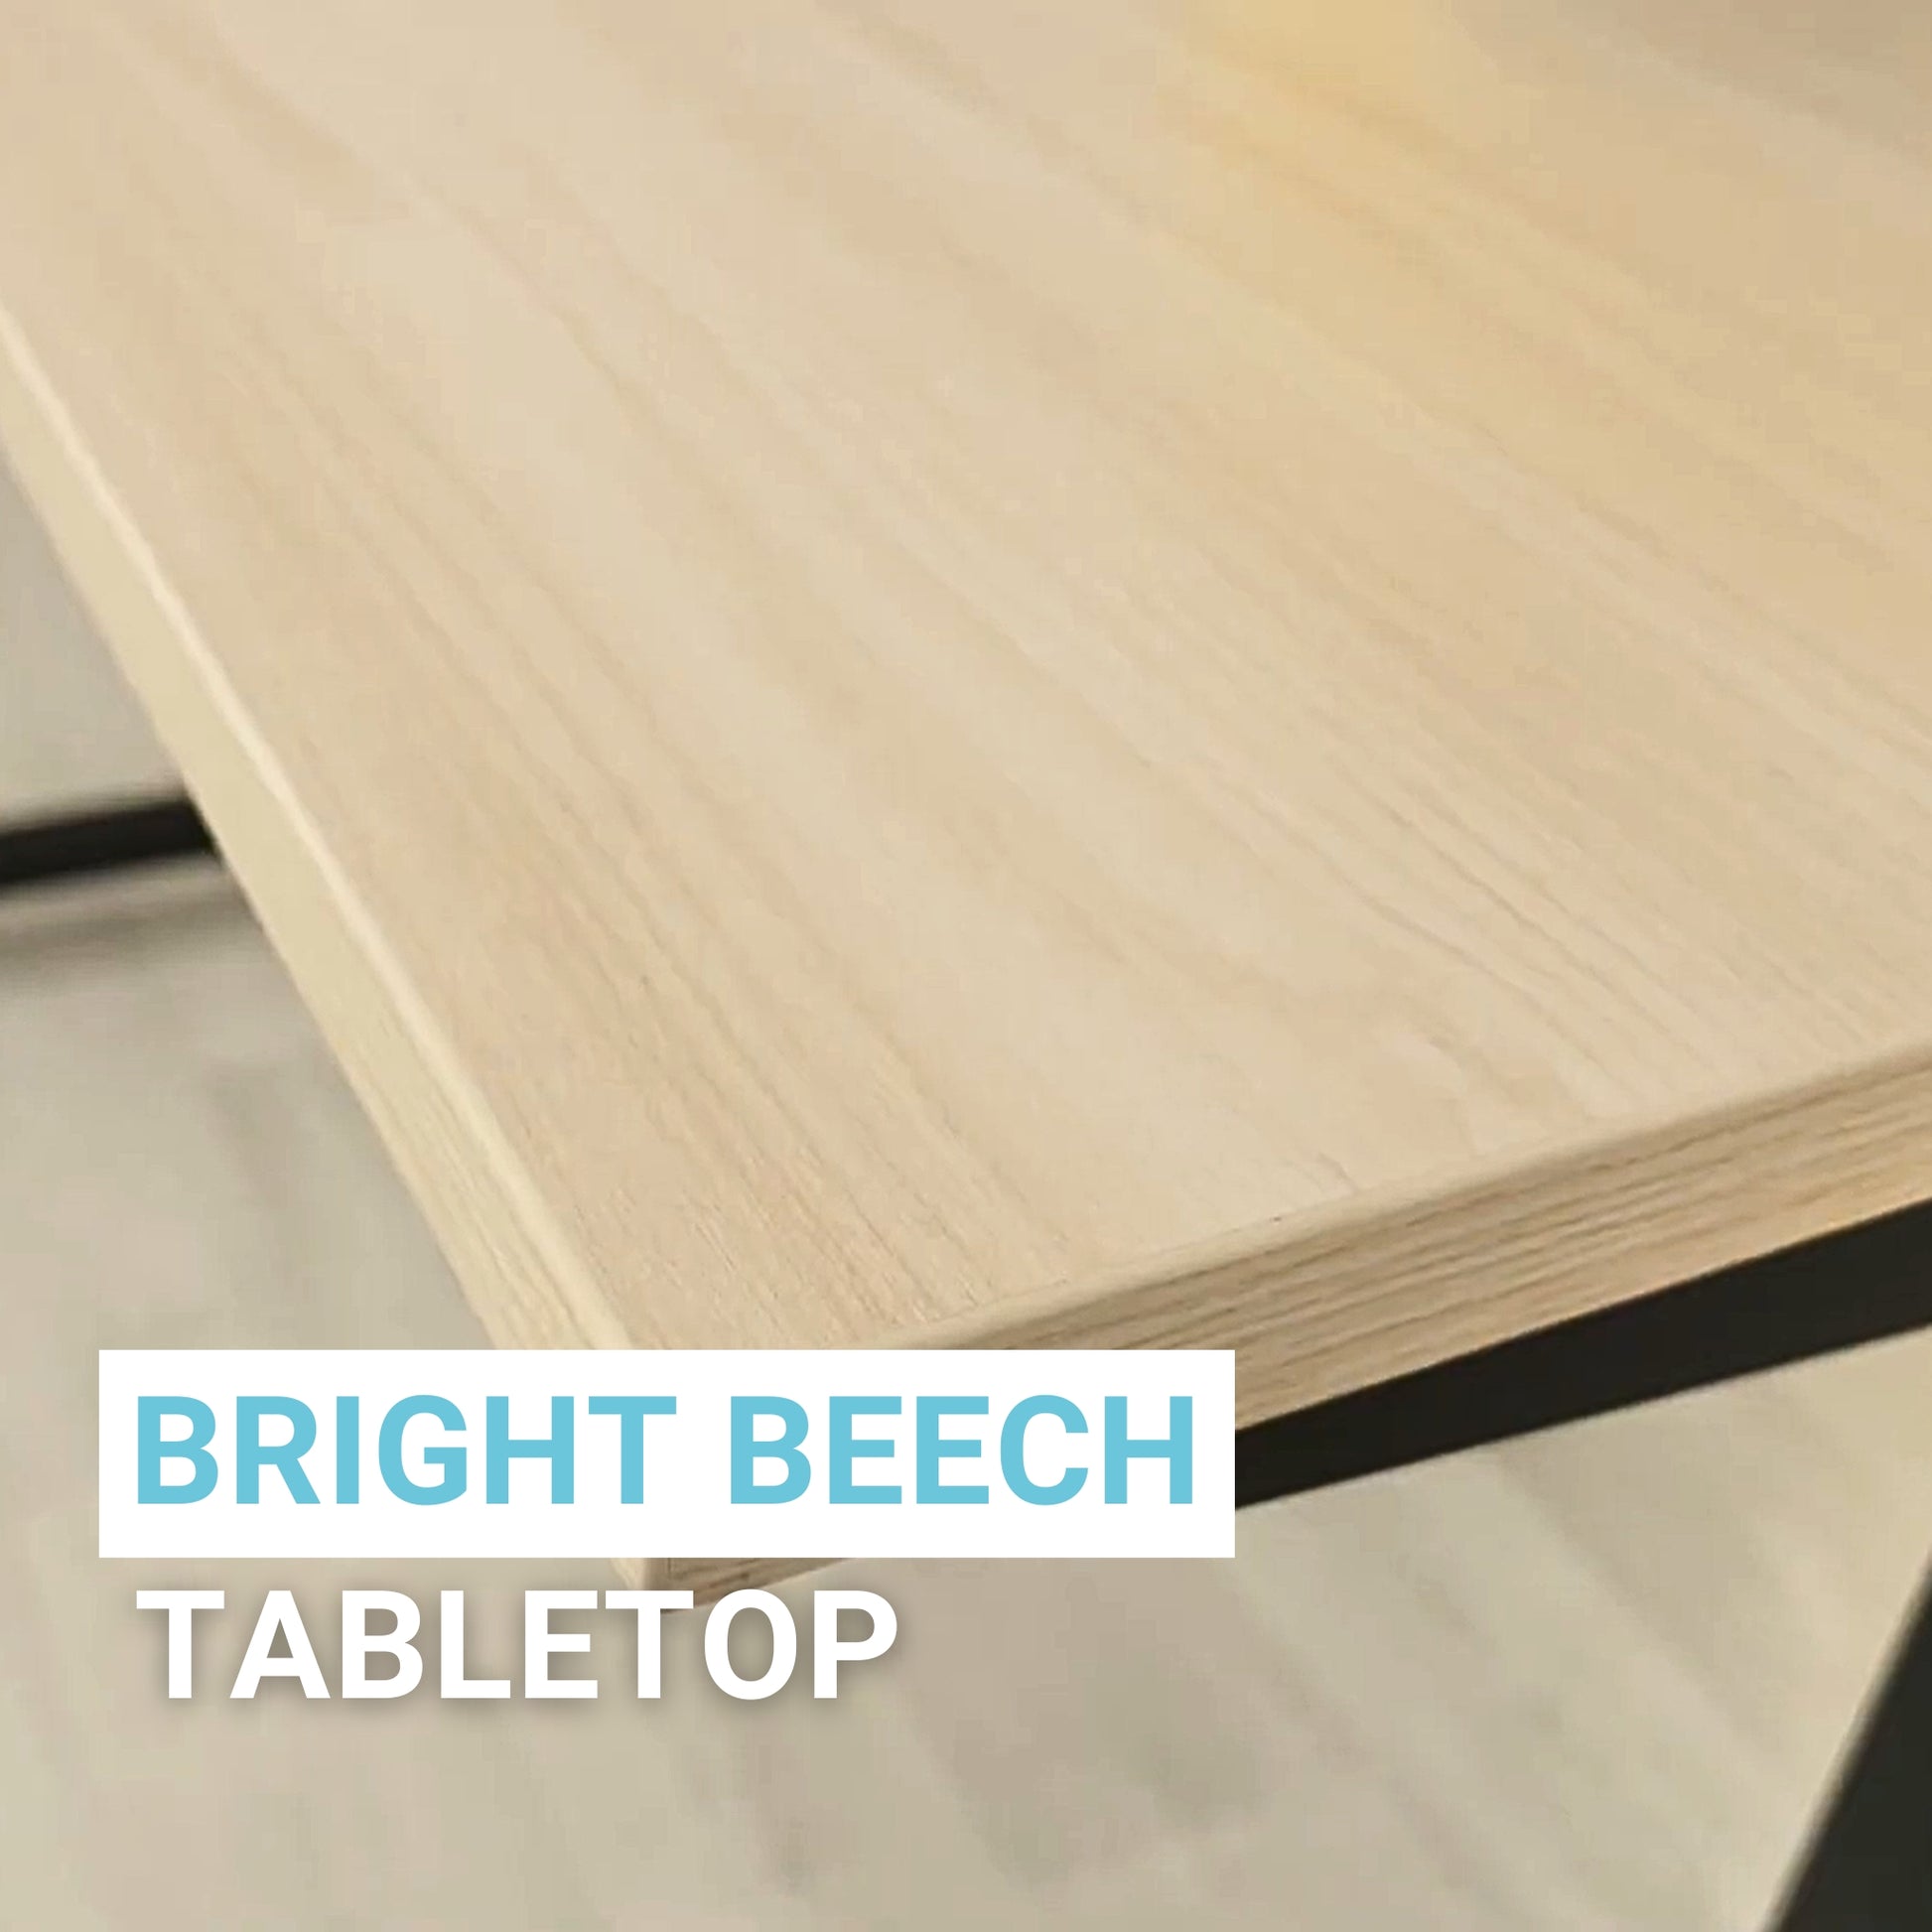 Bright Beech Tabletop